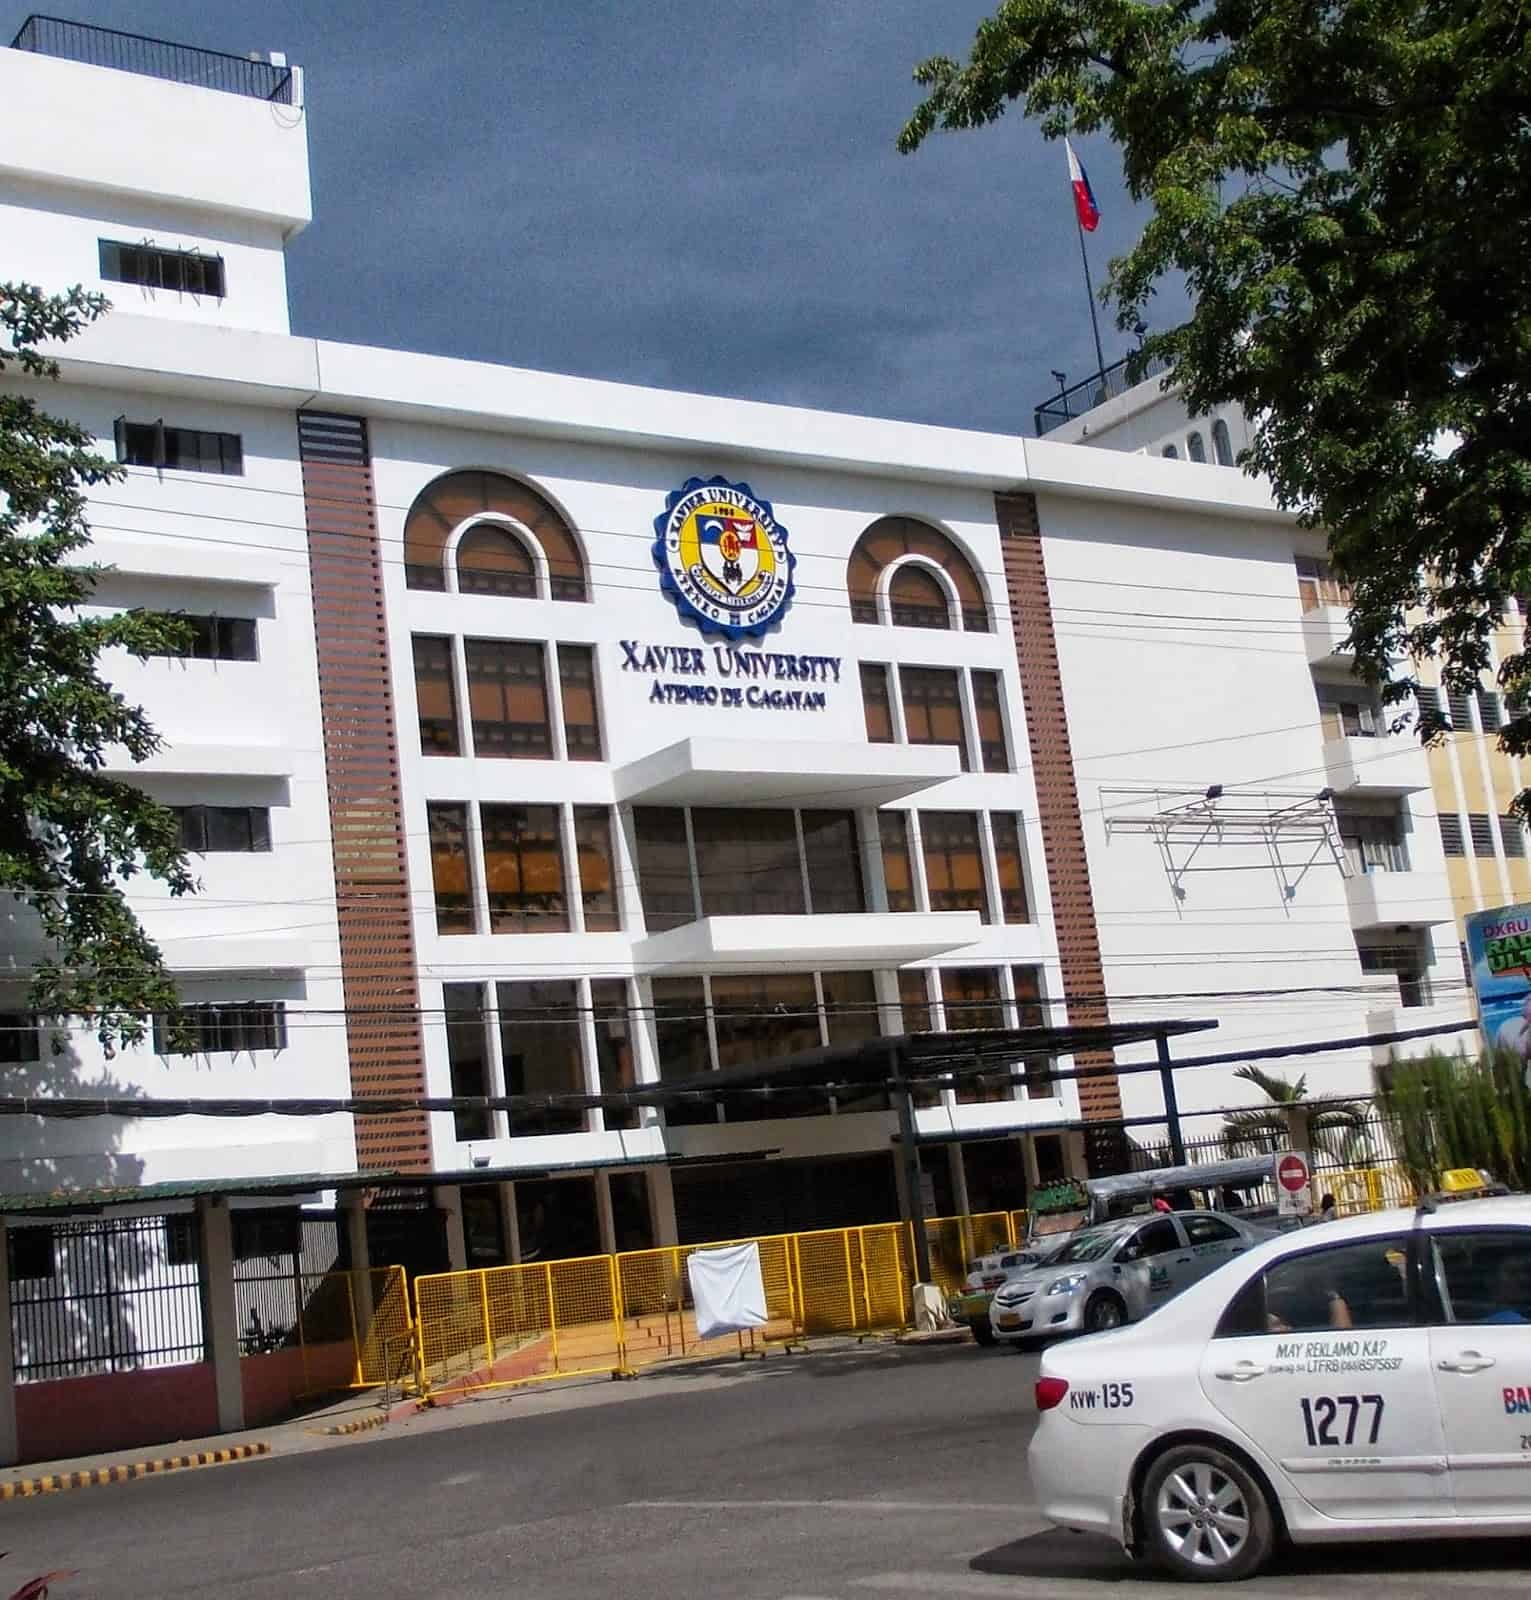 Xavier University- Ateneo de Cagayan and Cebu Landmasters In Talks for